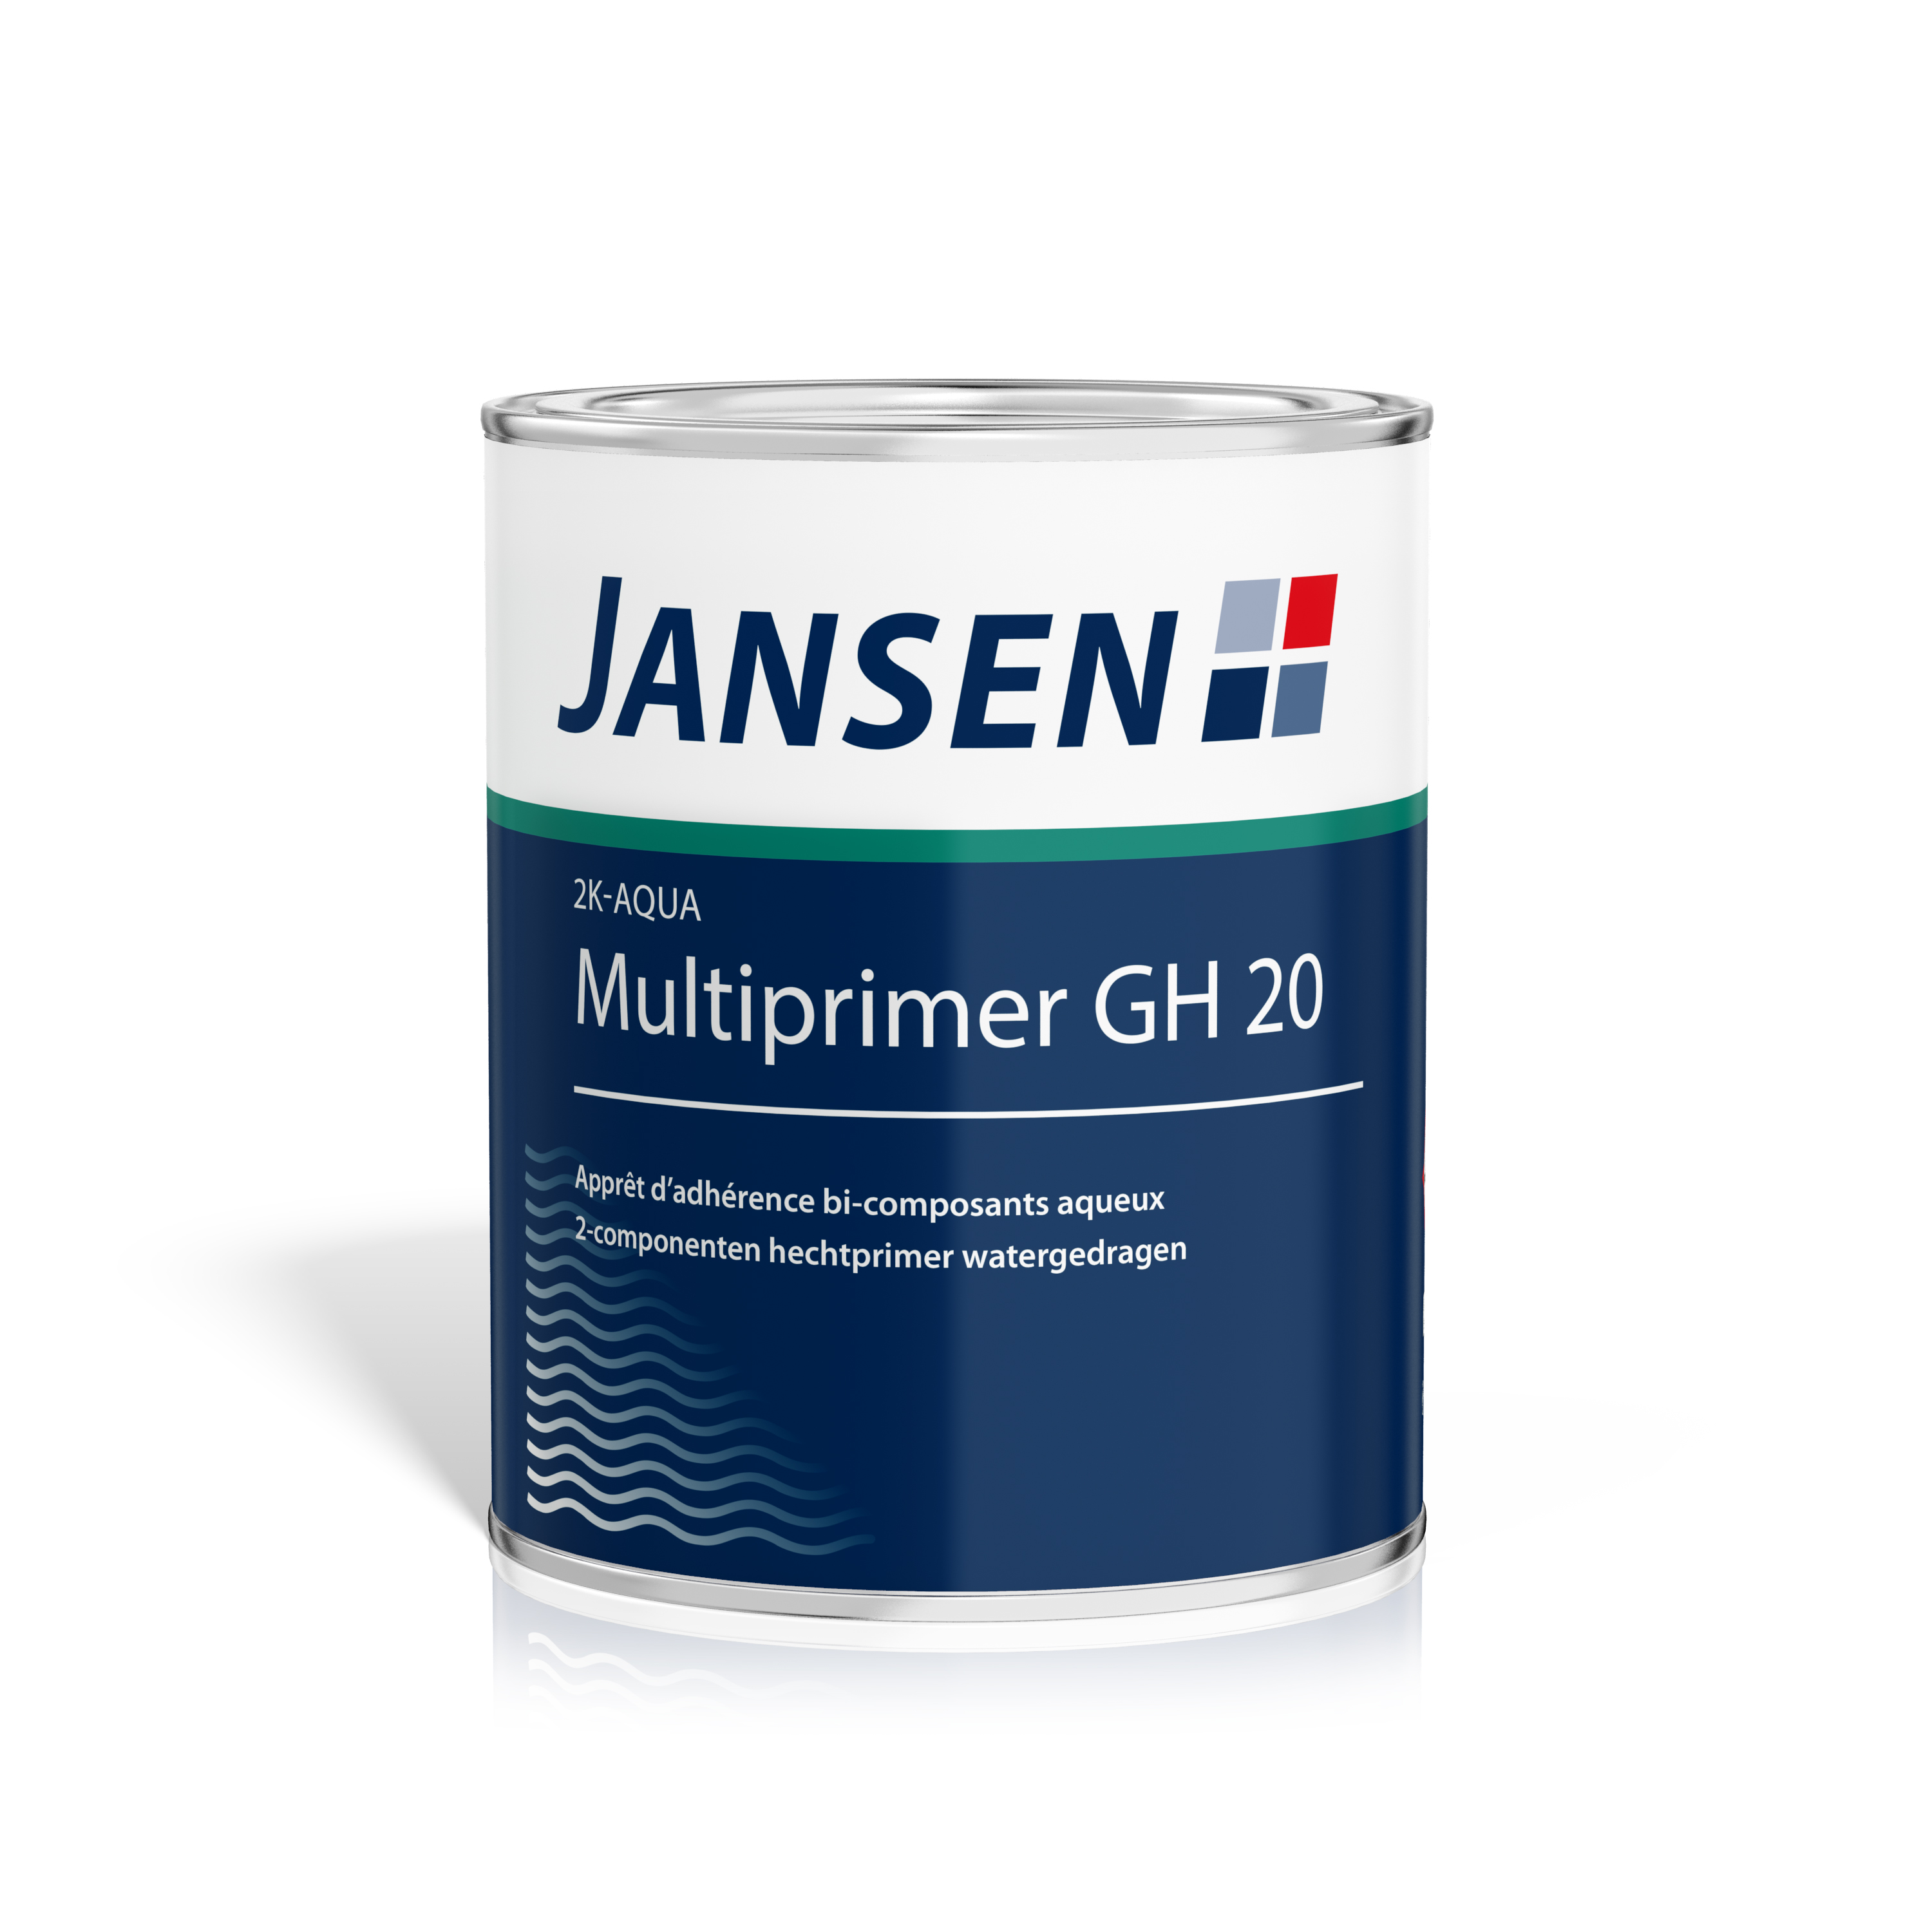 Jansen 2K-Aqua Multiprimer GH20 inkl. Härter 1kg